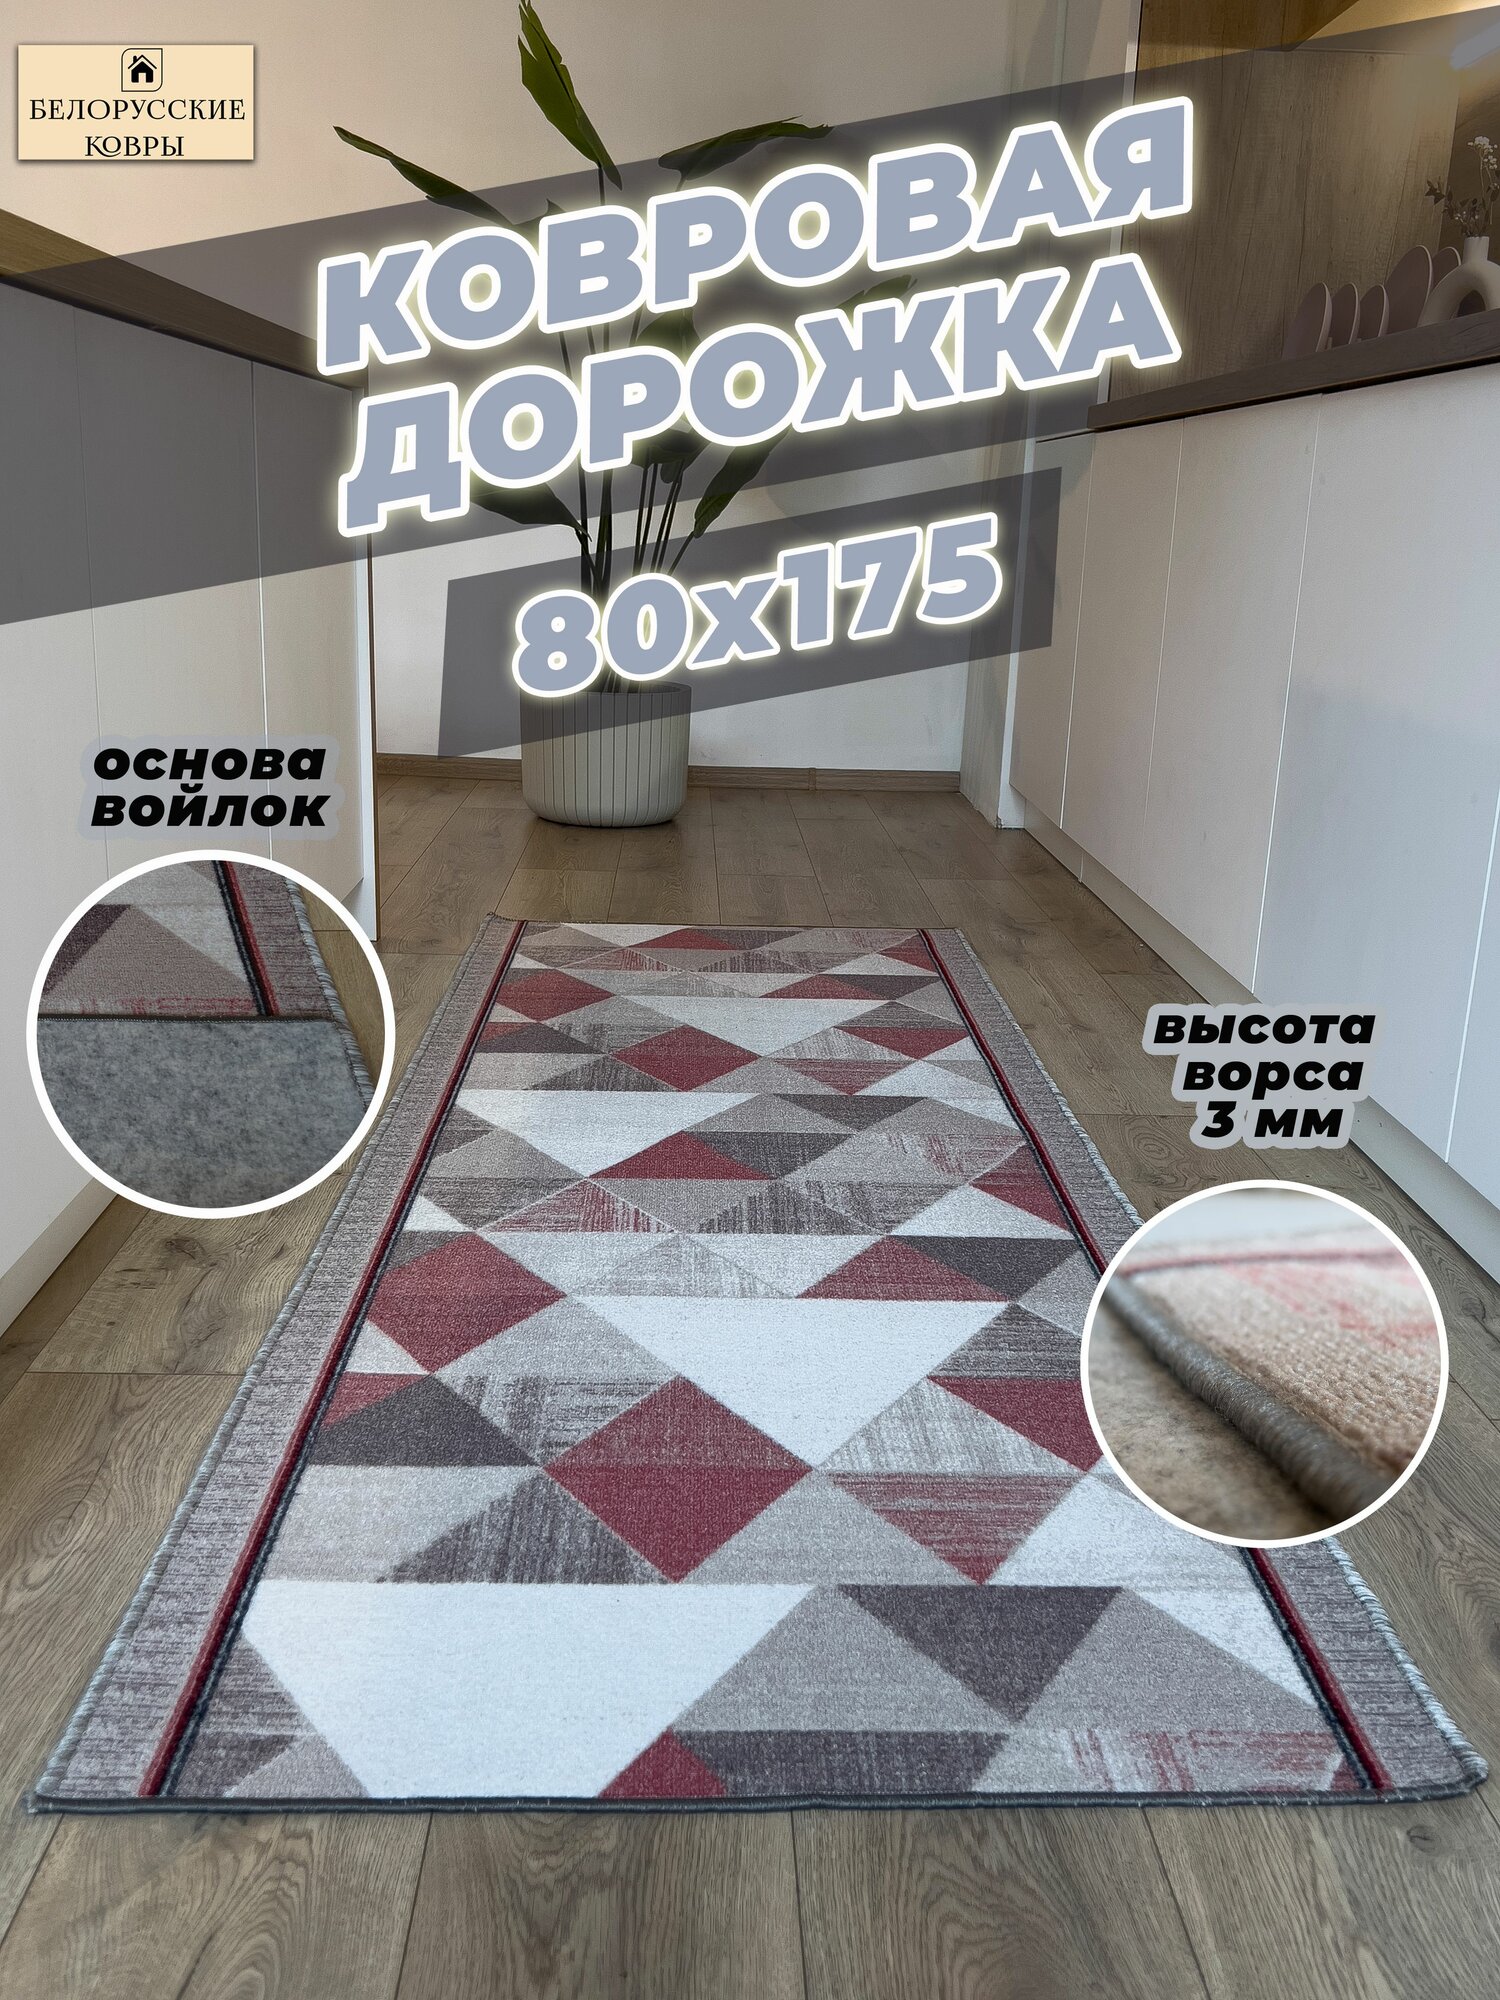 Белорусские ковры, ковровая дорожка 80х175см./0,8х1,75м.